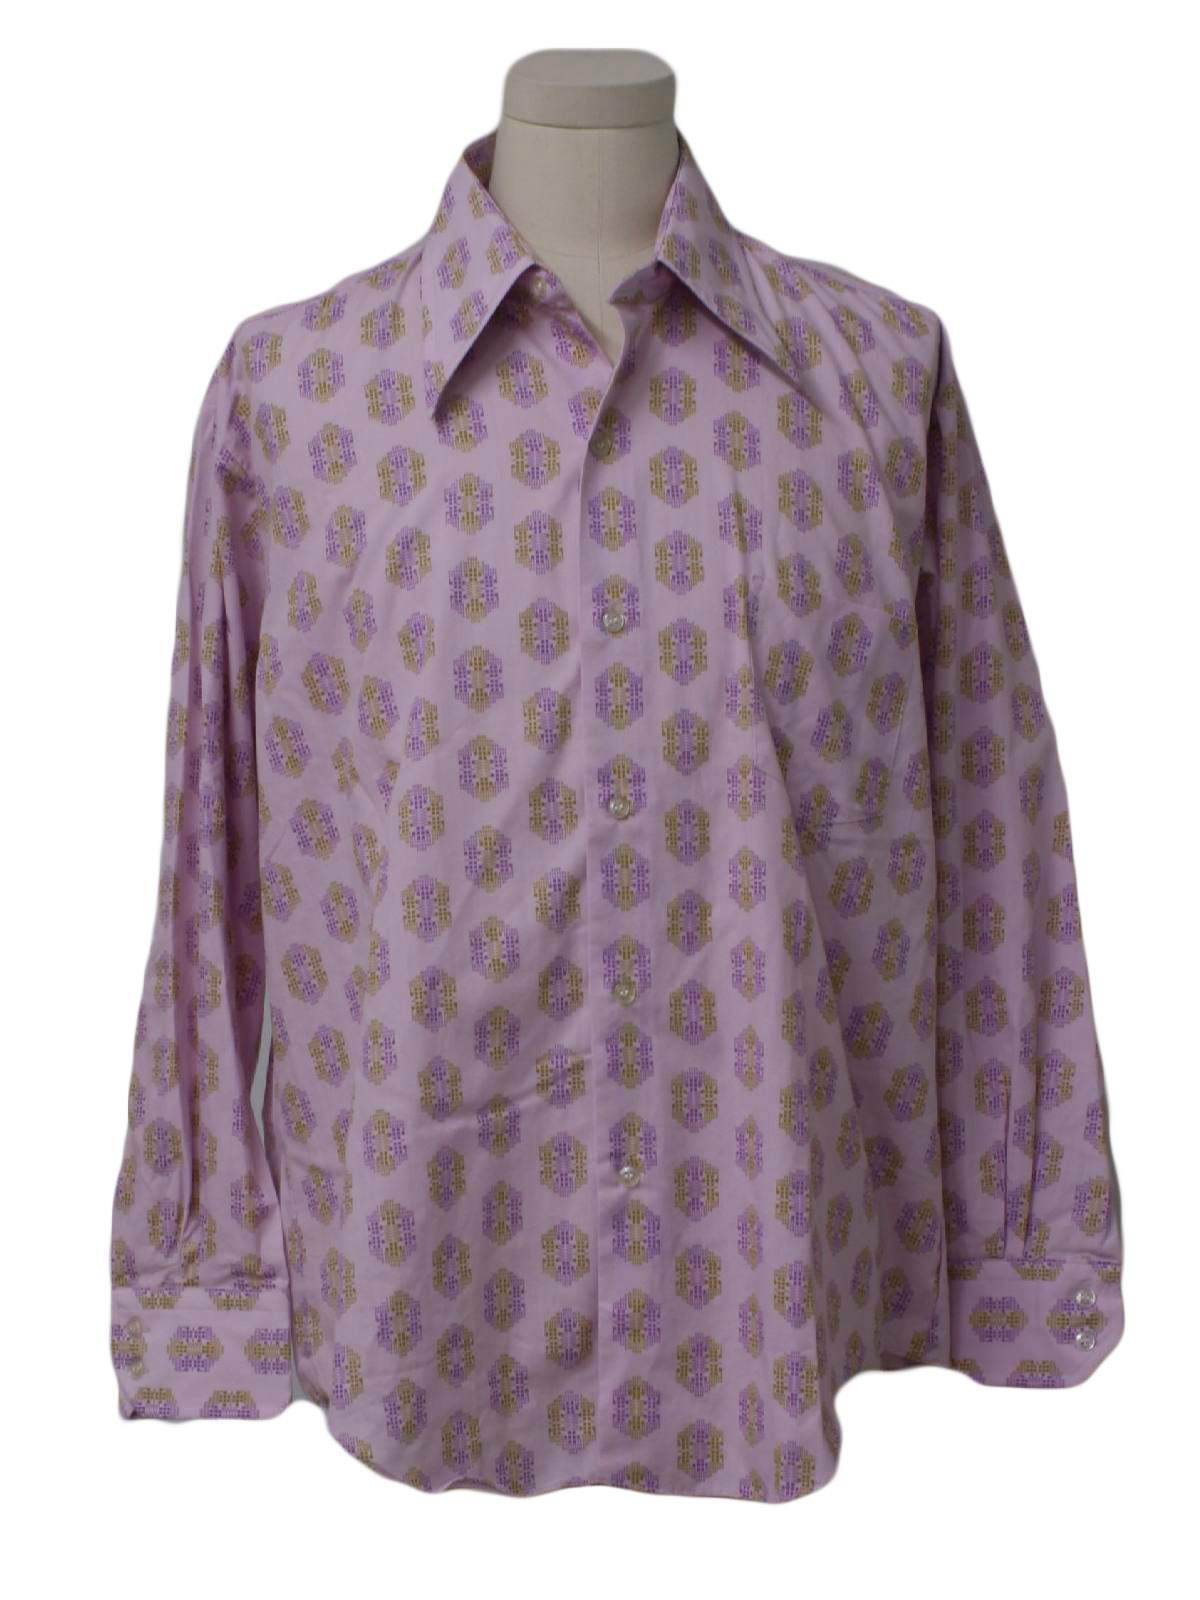 Vintage Kmart 70's Shirt: 70s -Kmart- Mens violet background with ...